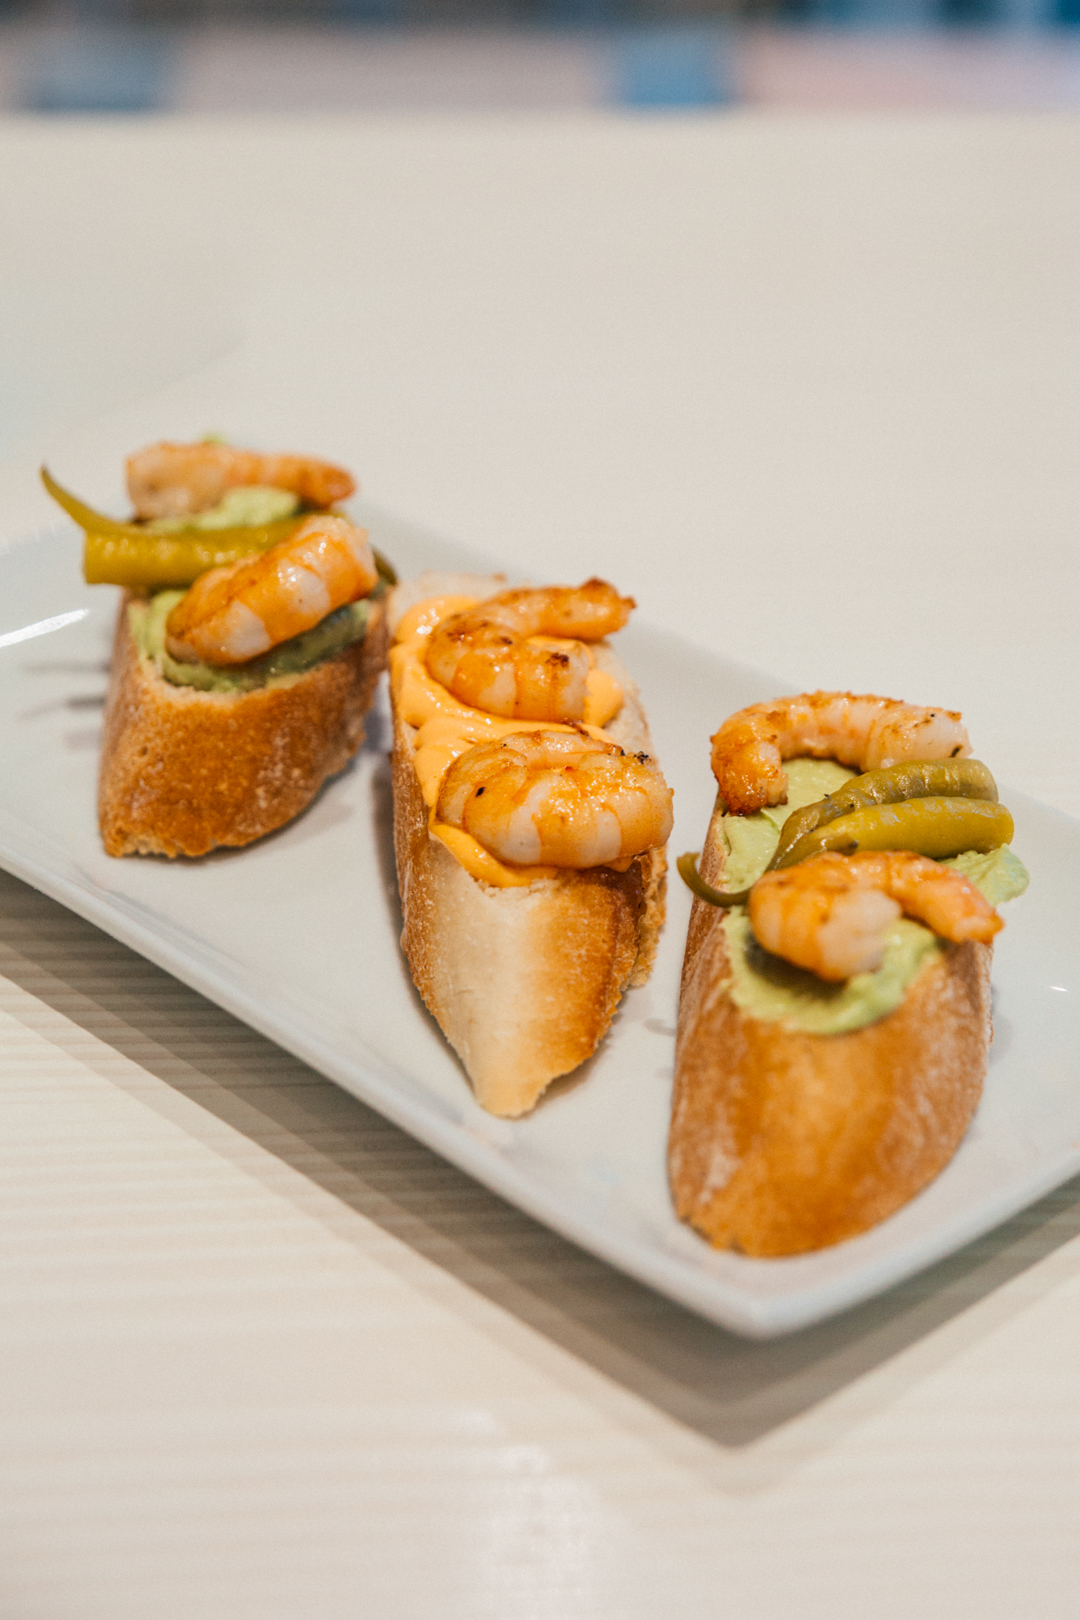 Duo of Shrimp tapas with guacamole and spicy sauce - Casa Blanca Restaurant, Marbella